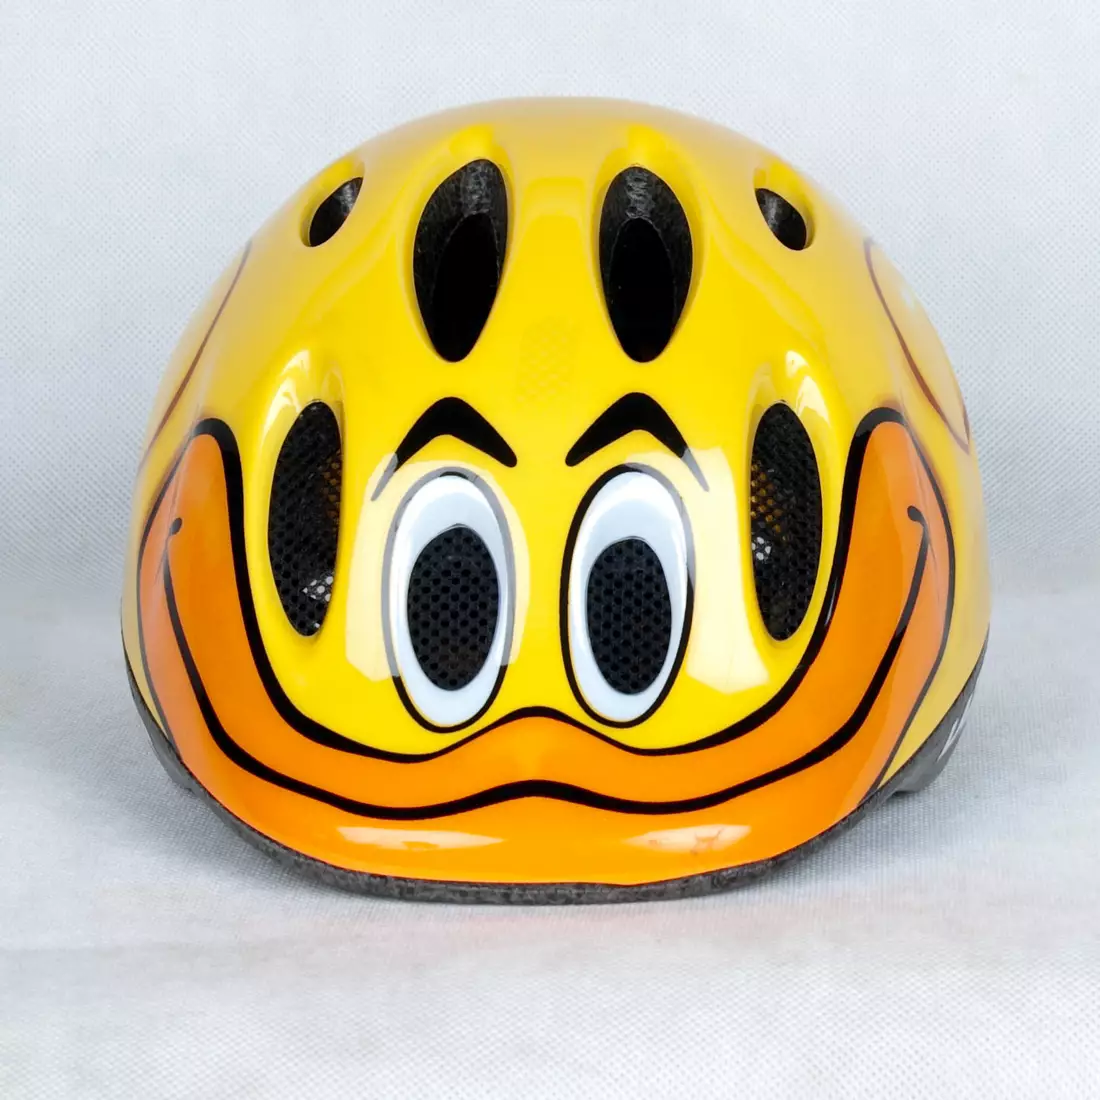 LAZER - LAZER MAX children's helmet - duck